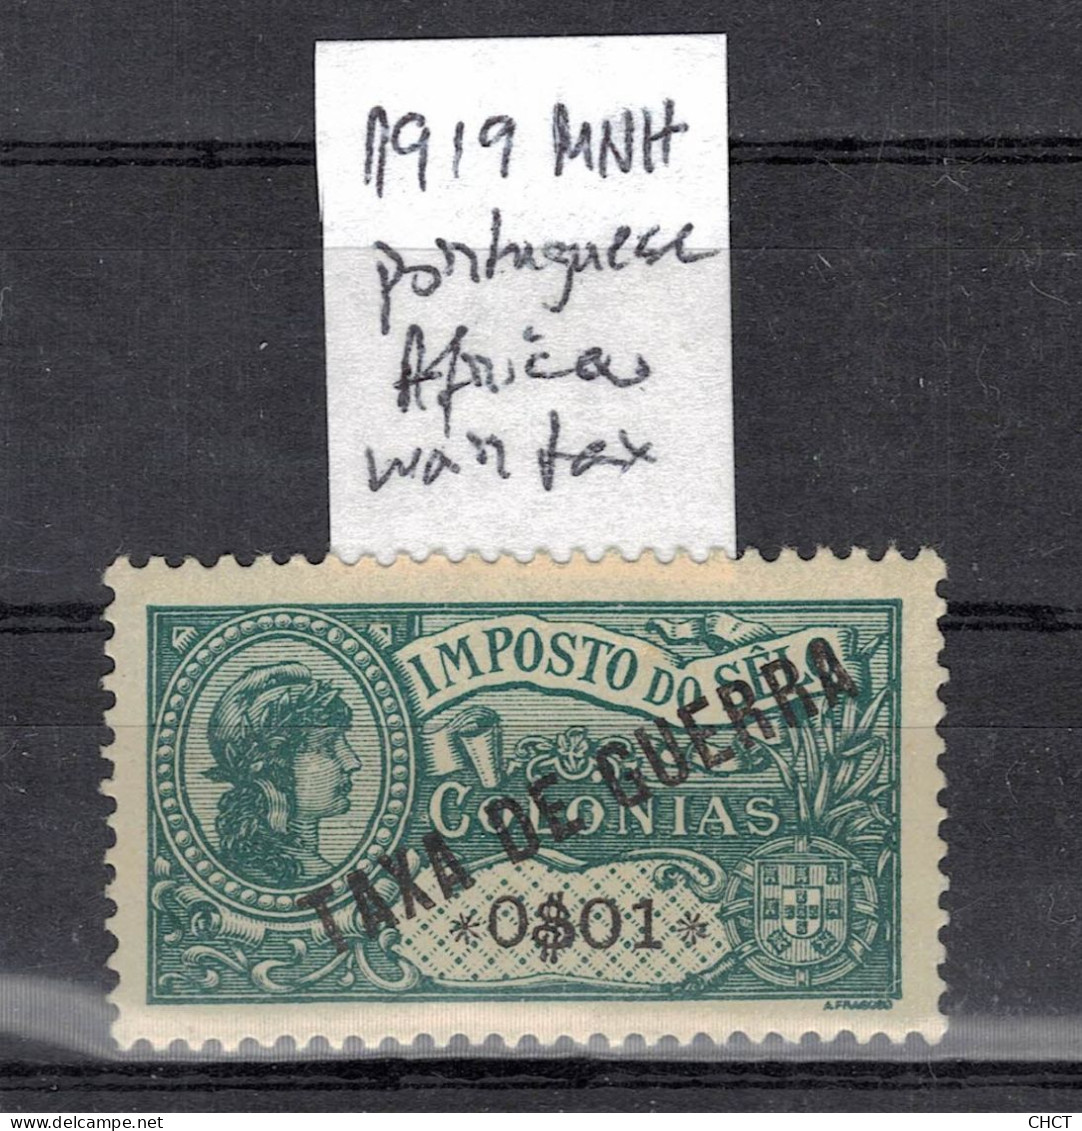 CHCT3 - War Tax Stamp, MNH, 1919, Portuguese Africa - Portuguese Africa